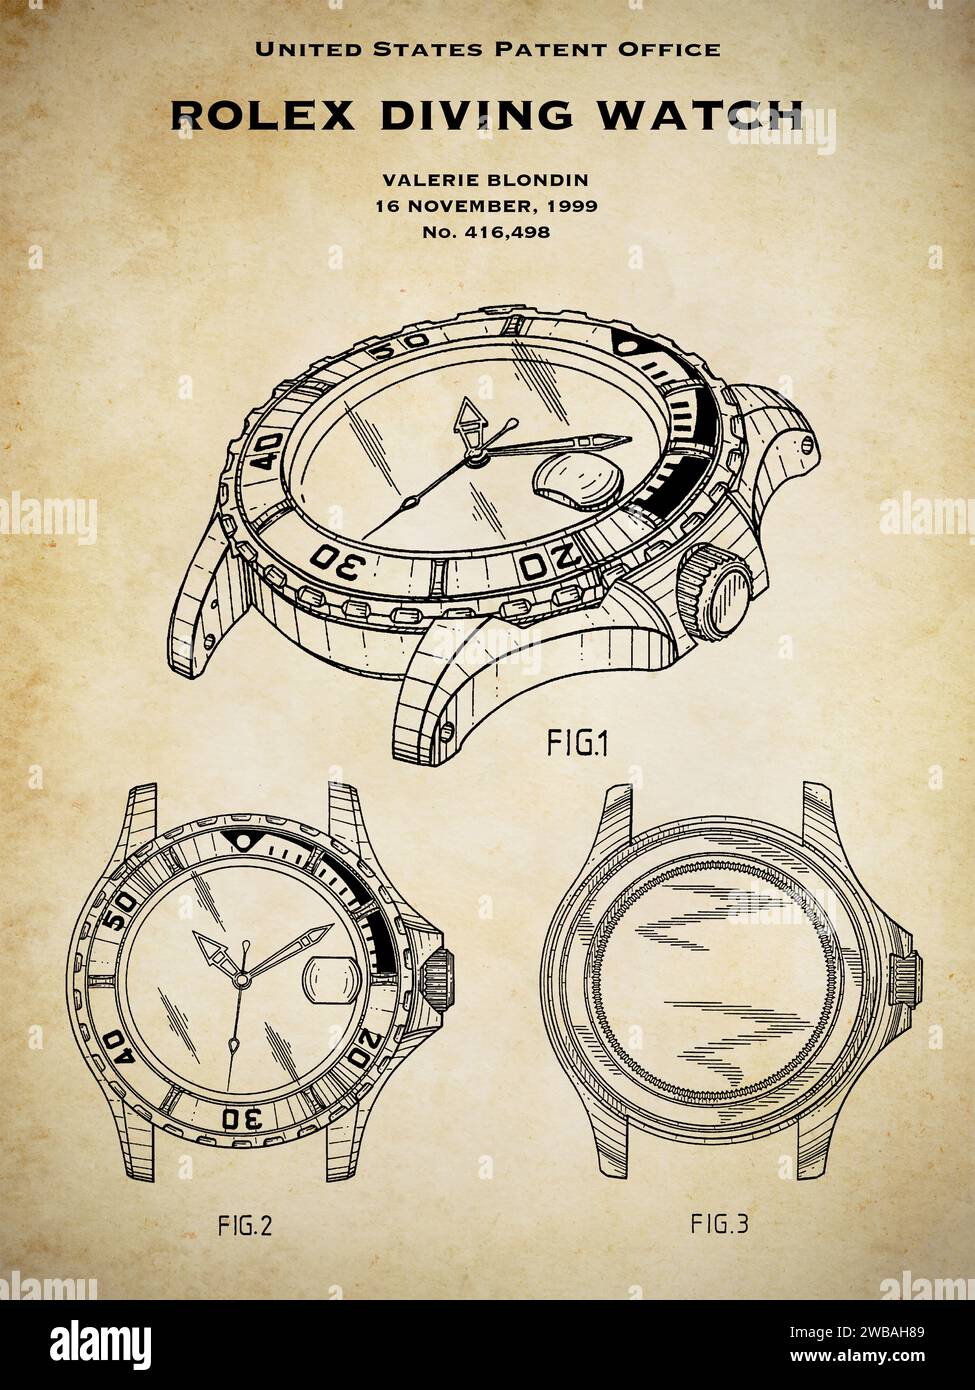 Bureau de brevets AMÉRICAIN conception à partir de 1999 d'une montre de plongée Rolex sur un fond grungy vintage Banque D'Images